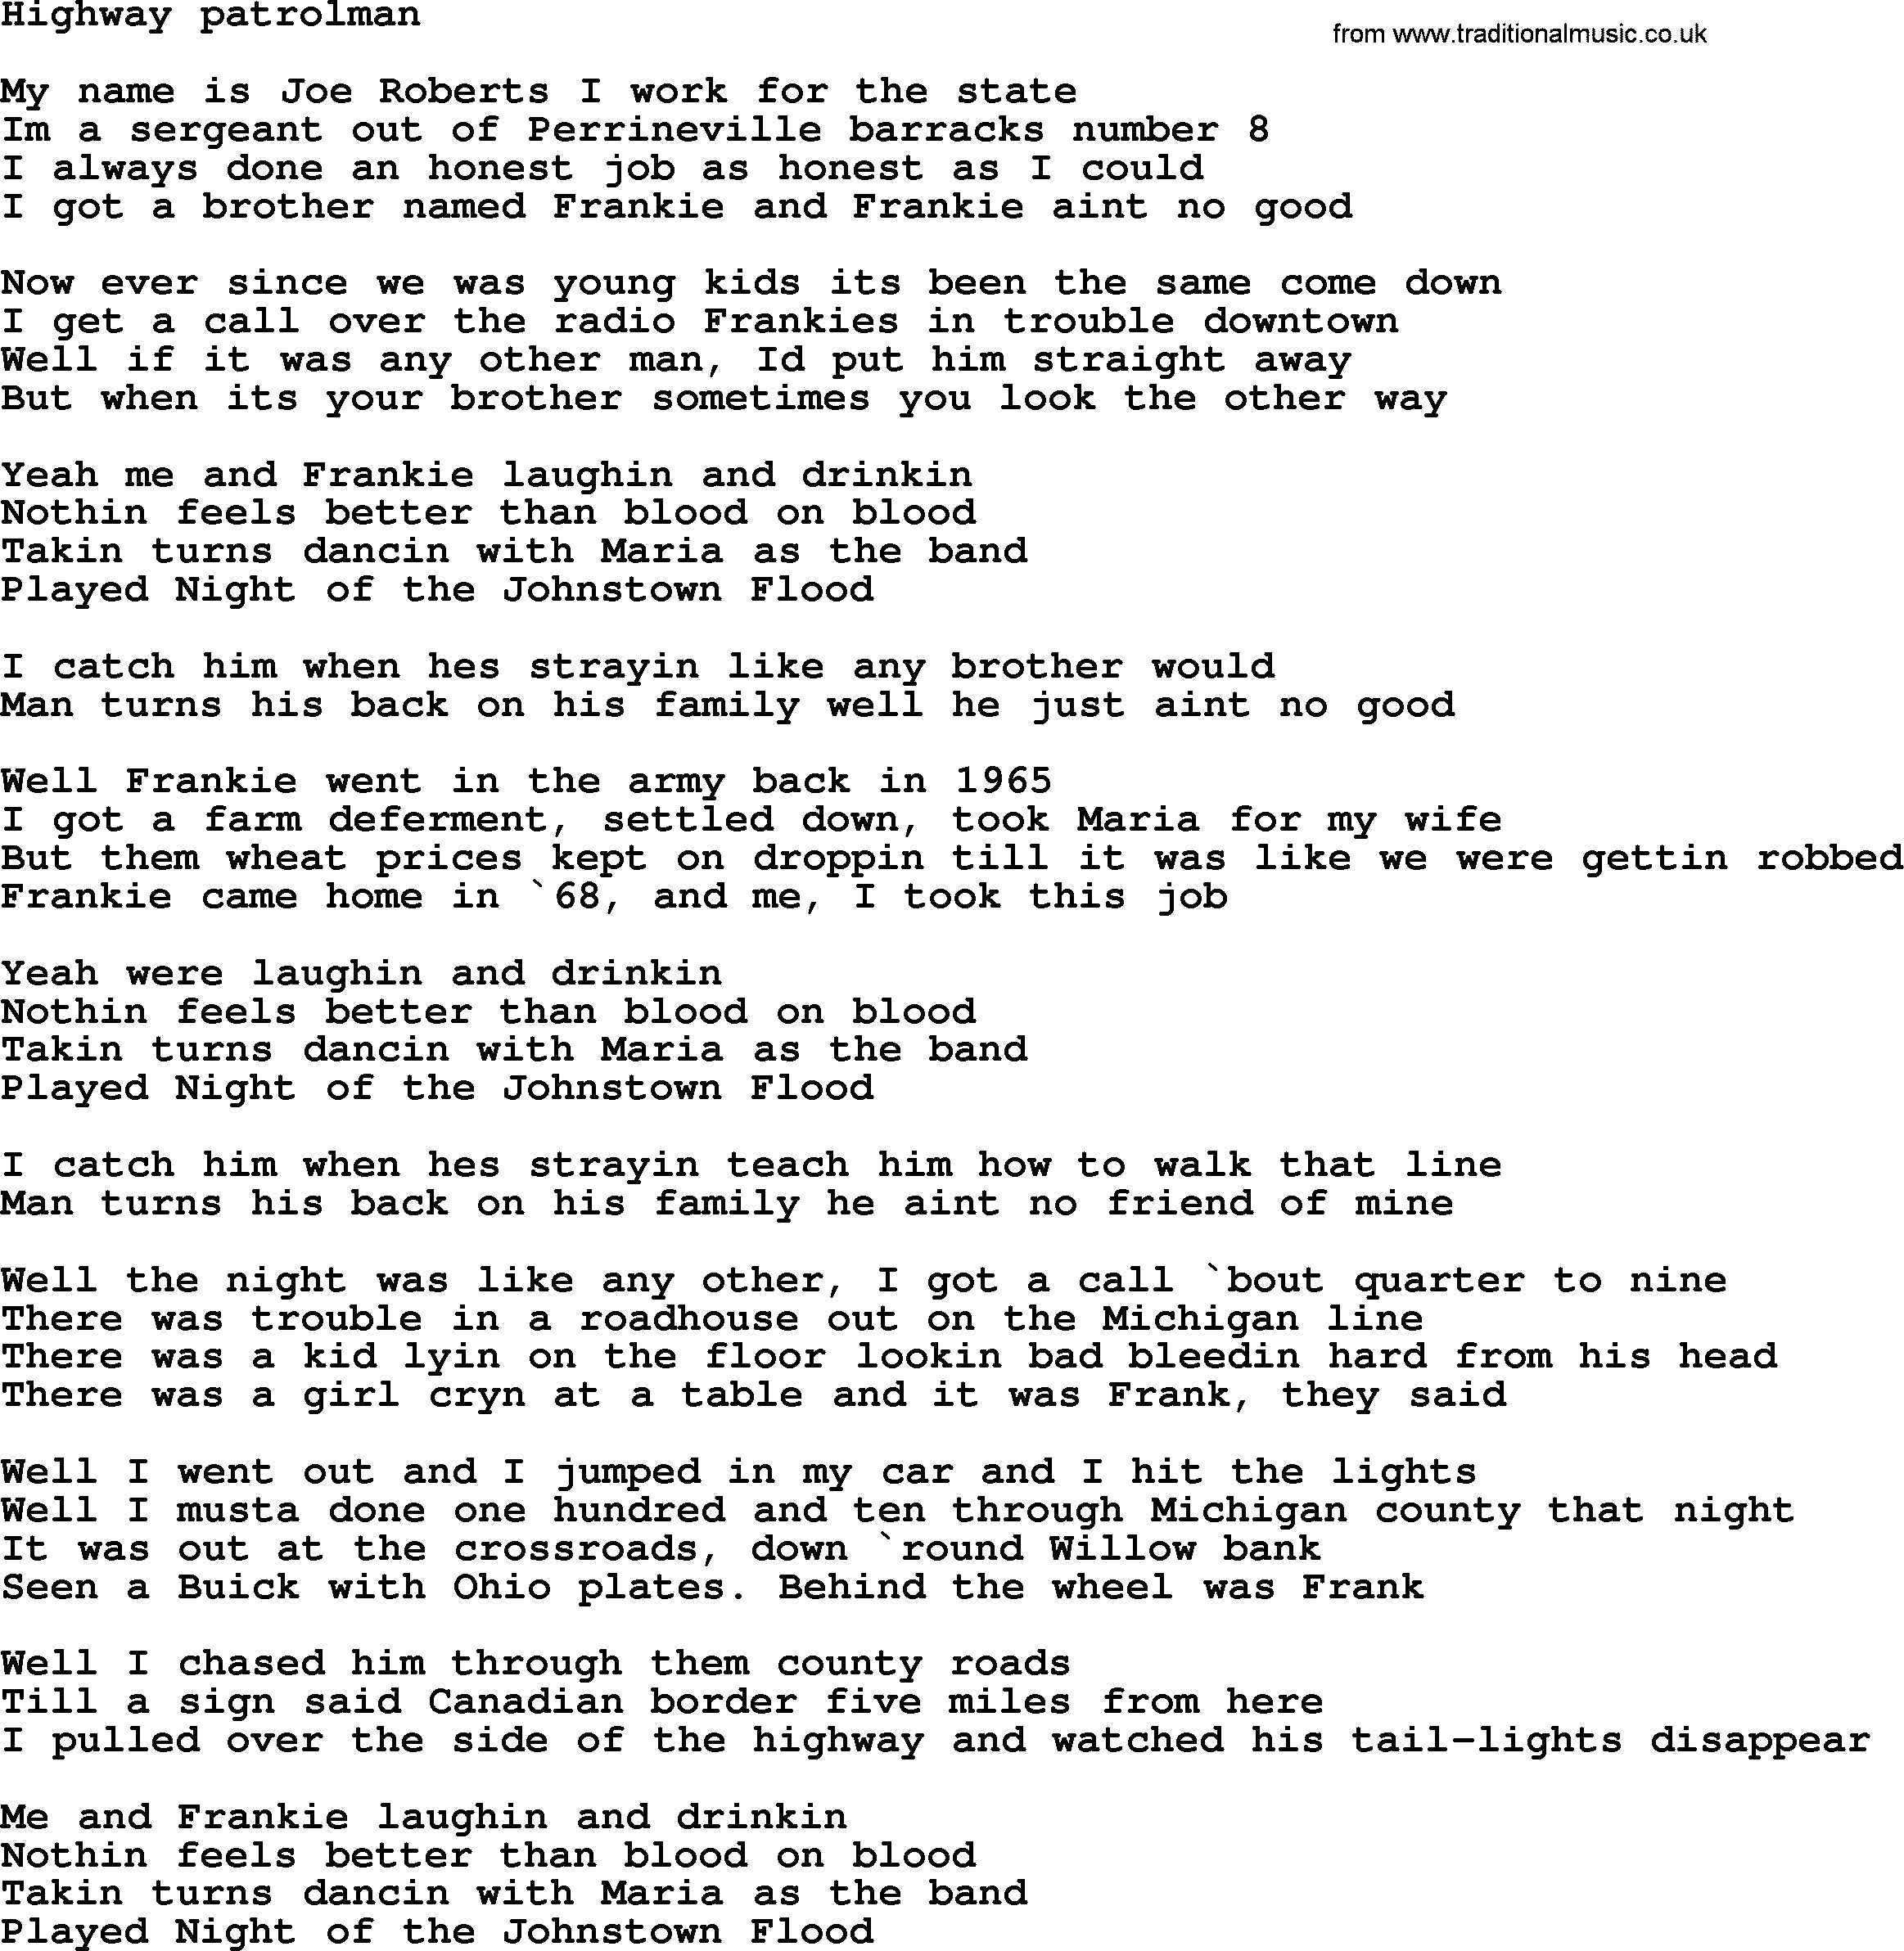 Bruce Springsteen song: Highway Patrolman lyrics